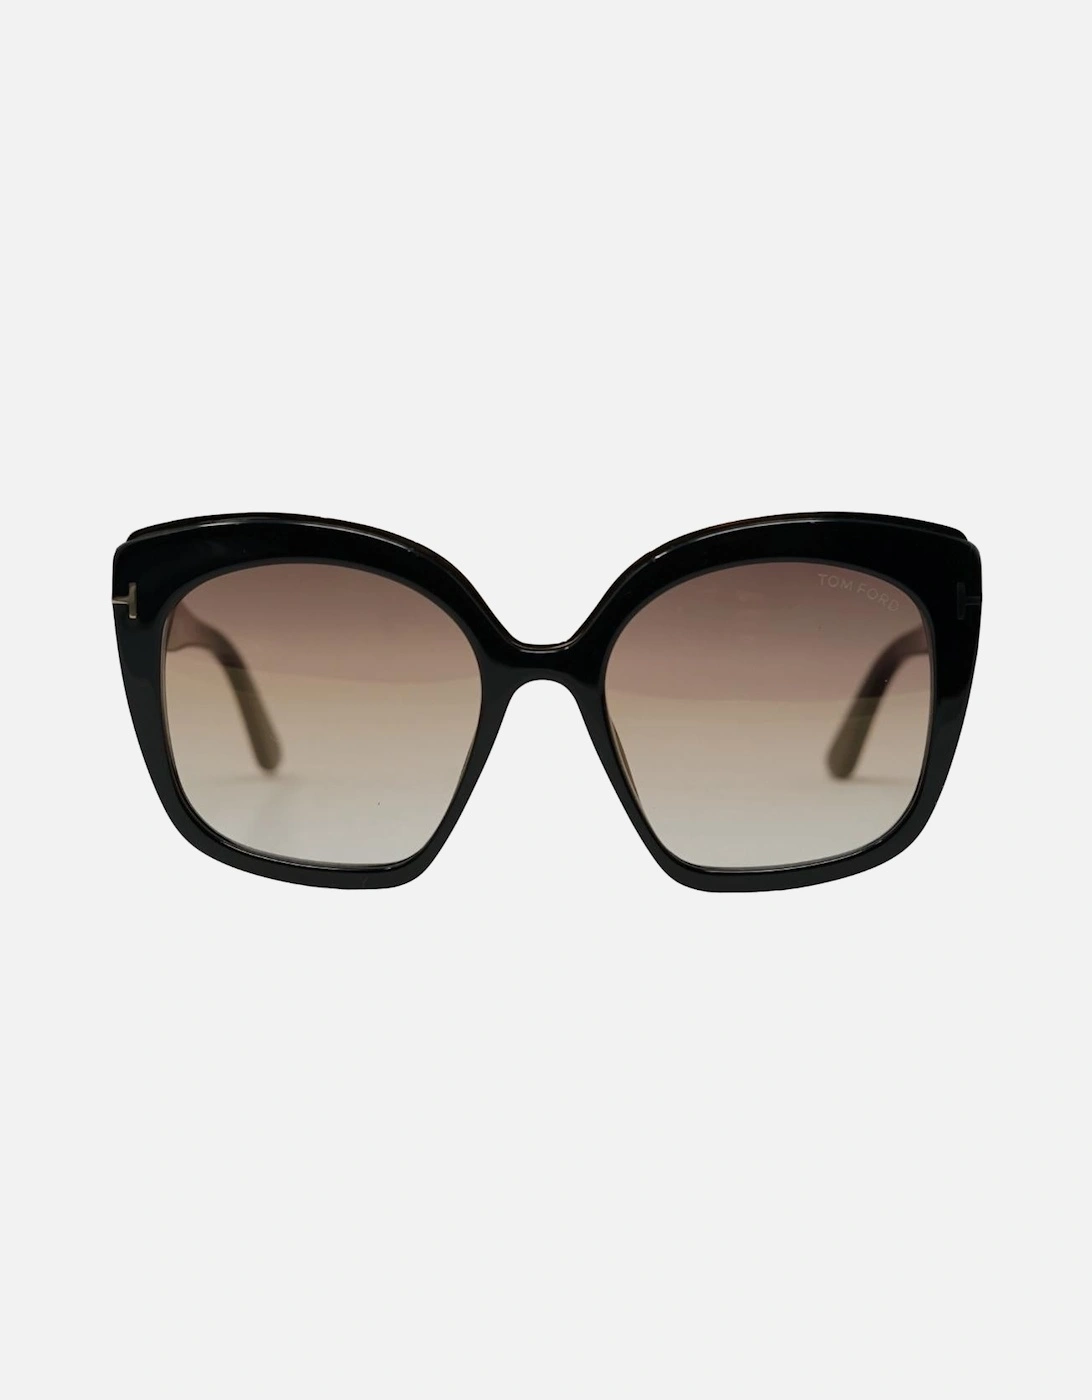 Chantalle FT0944 01G Black Sunglasses, 4 of 3